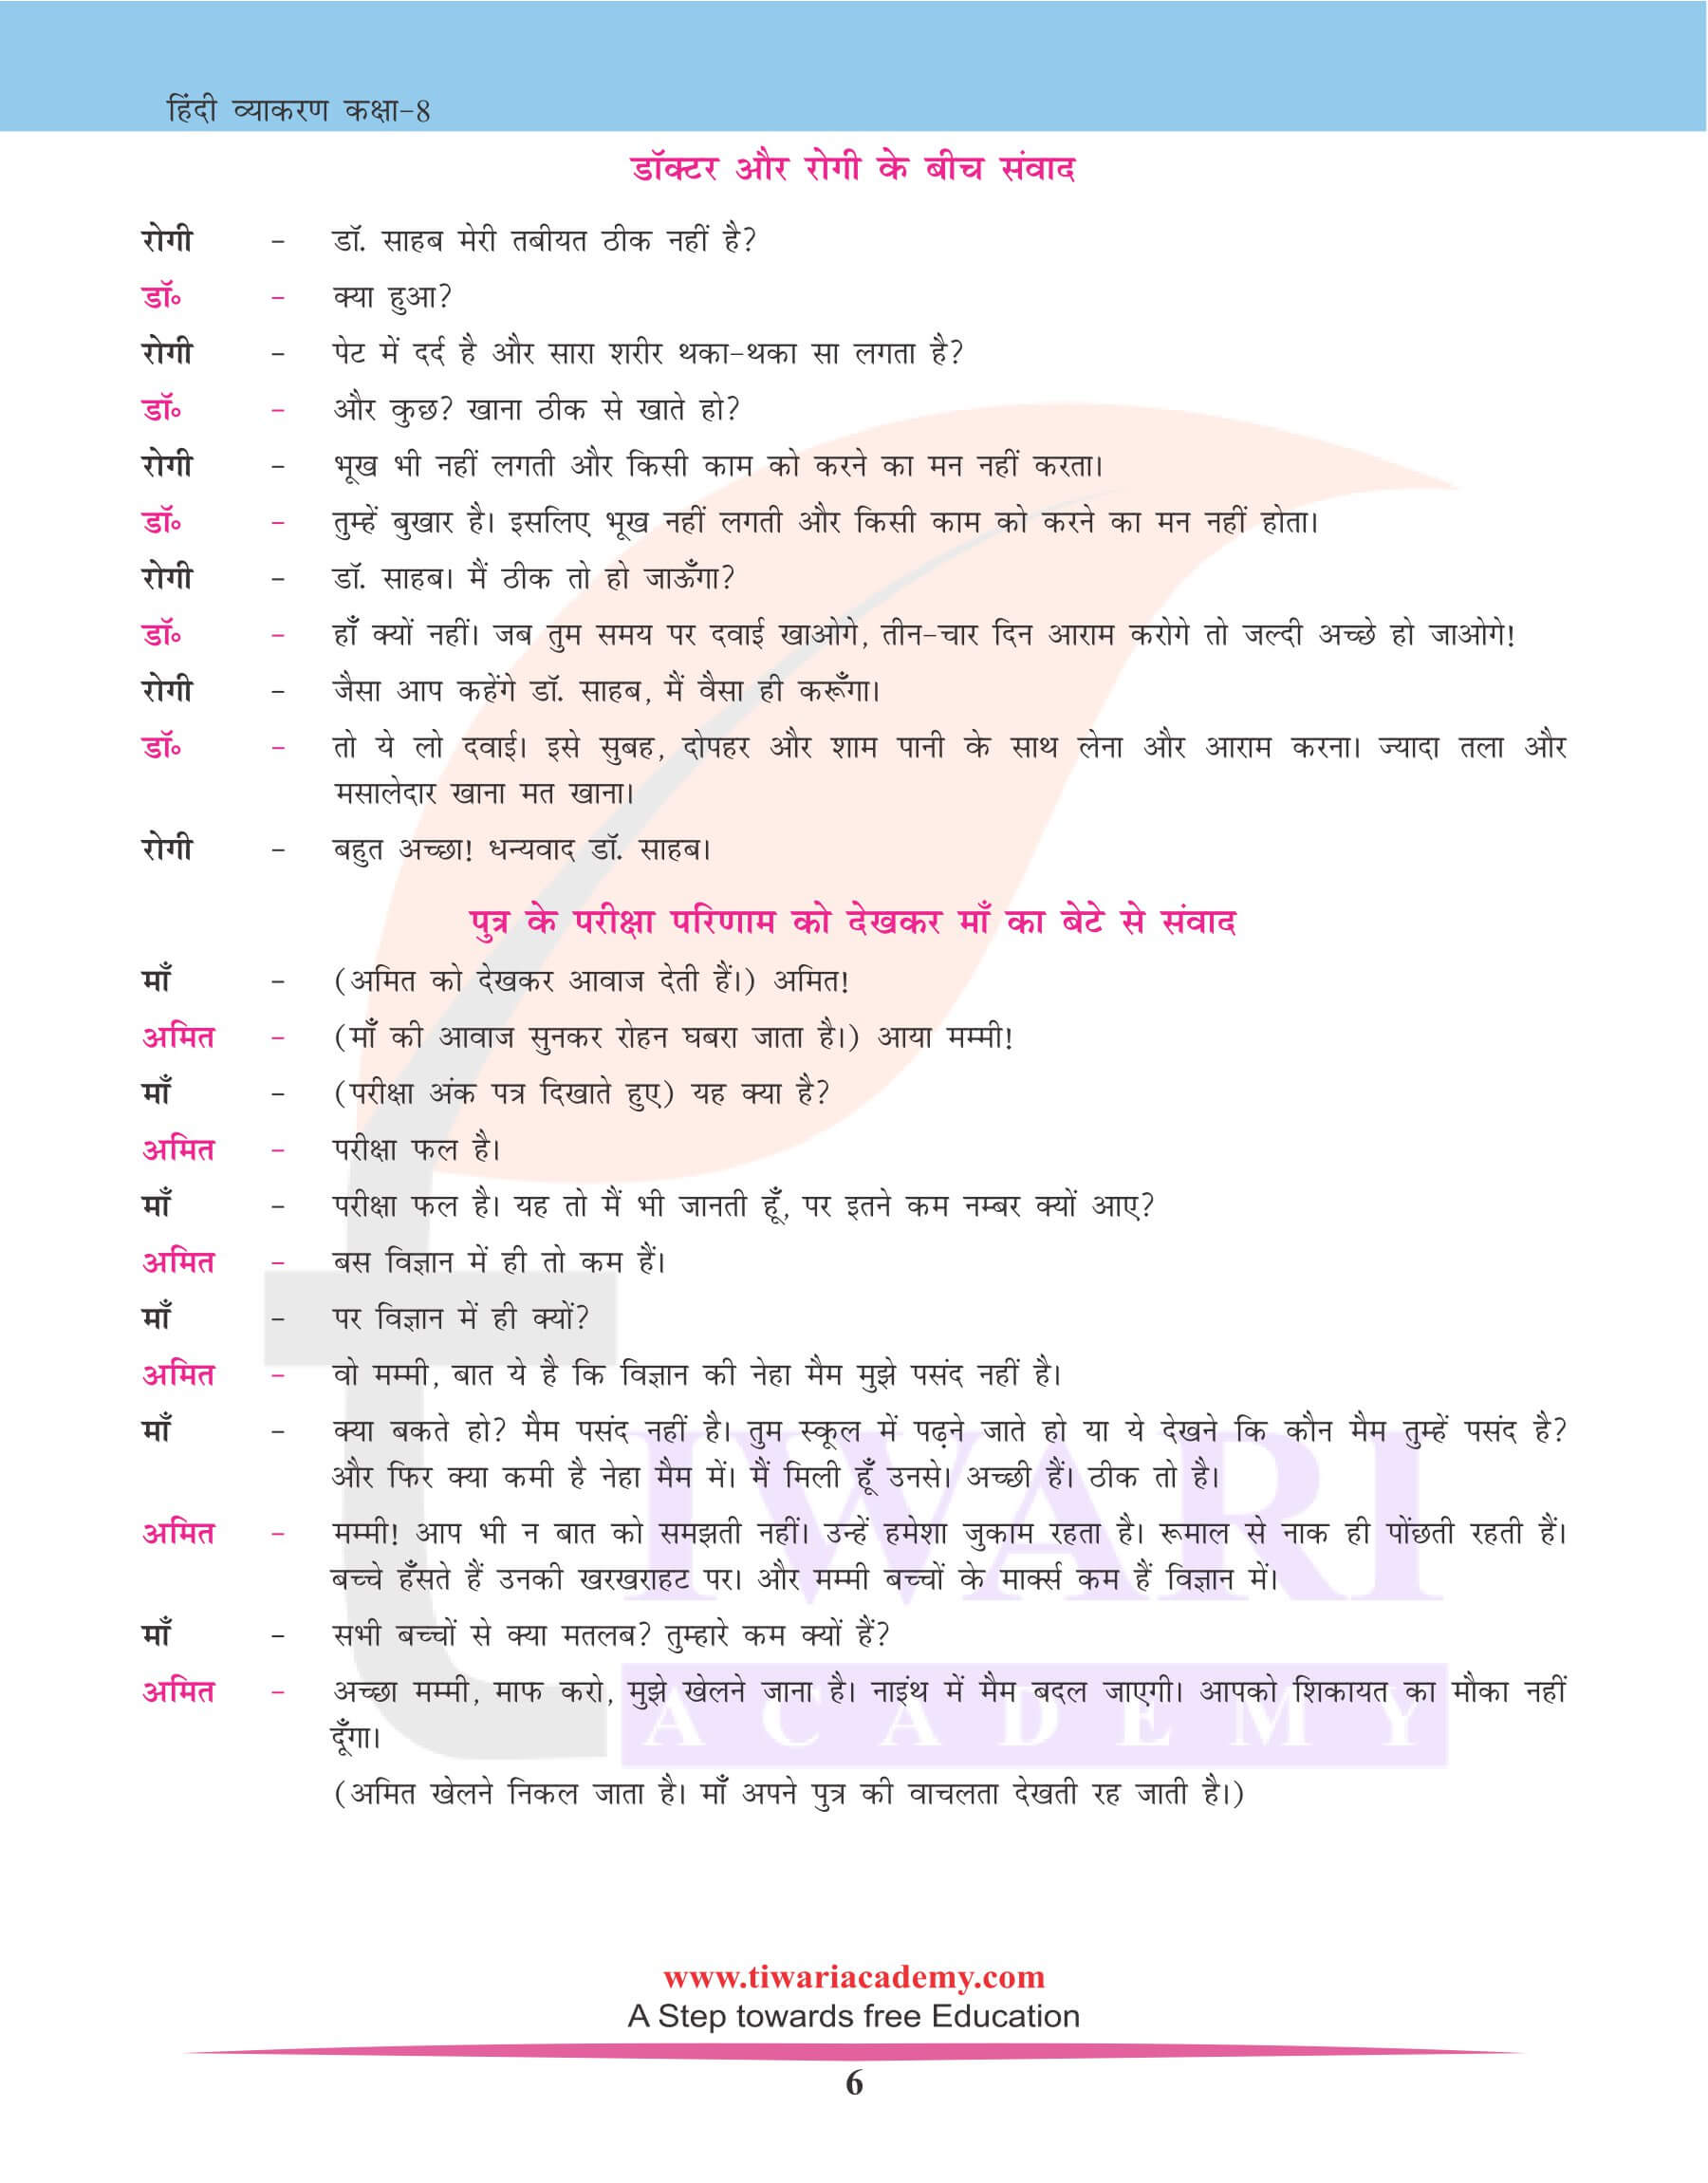 कक्षा 8 हिंदी व्याकरण में मौखिक अभिव्यक्ति नोट्स